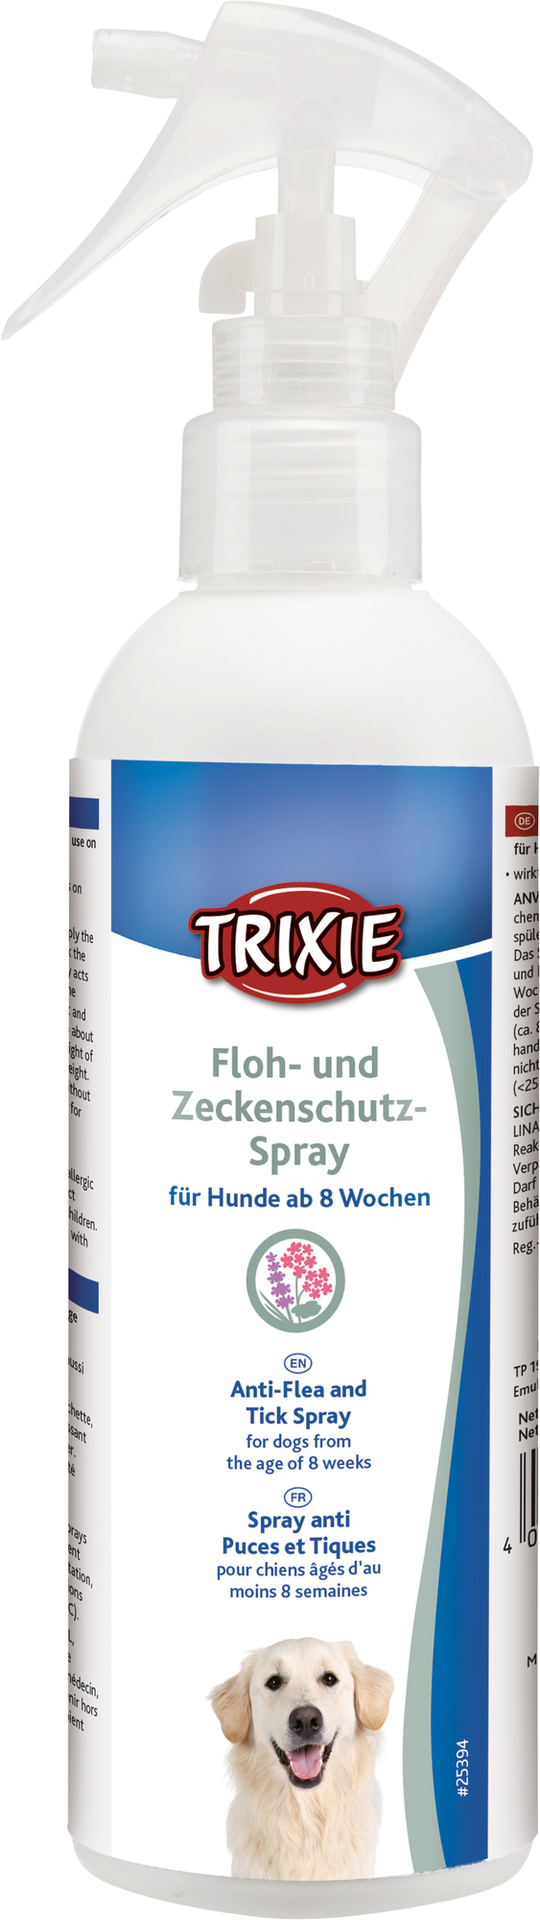 TRIXIE Floh- und Zeckenschutz-Spray 250 ml